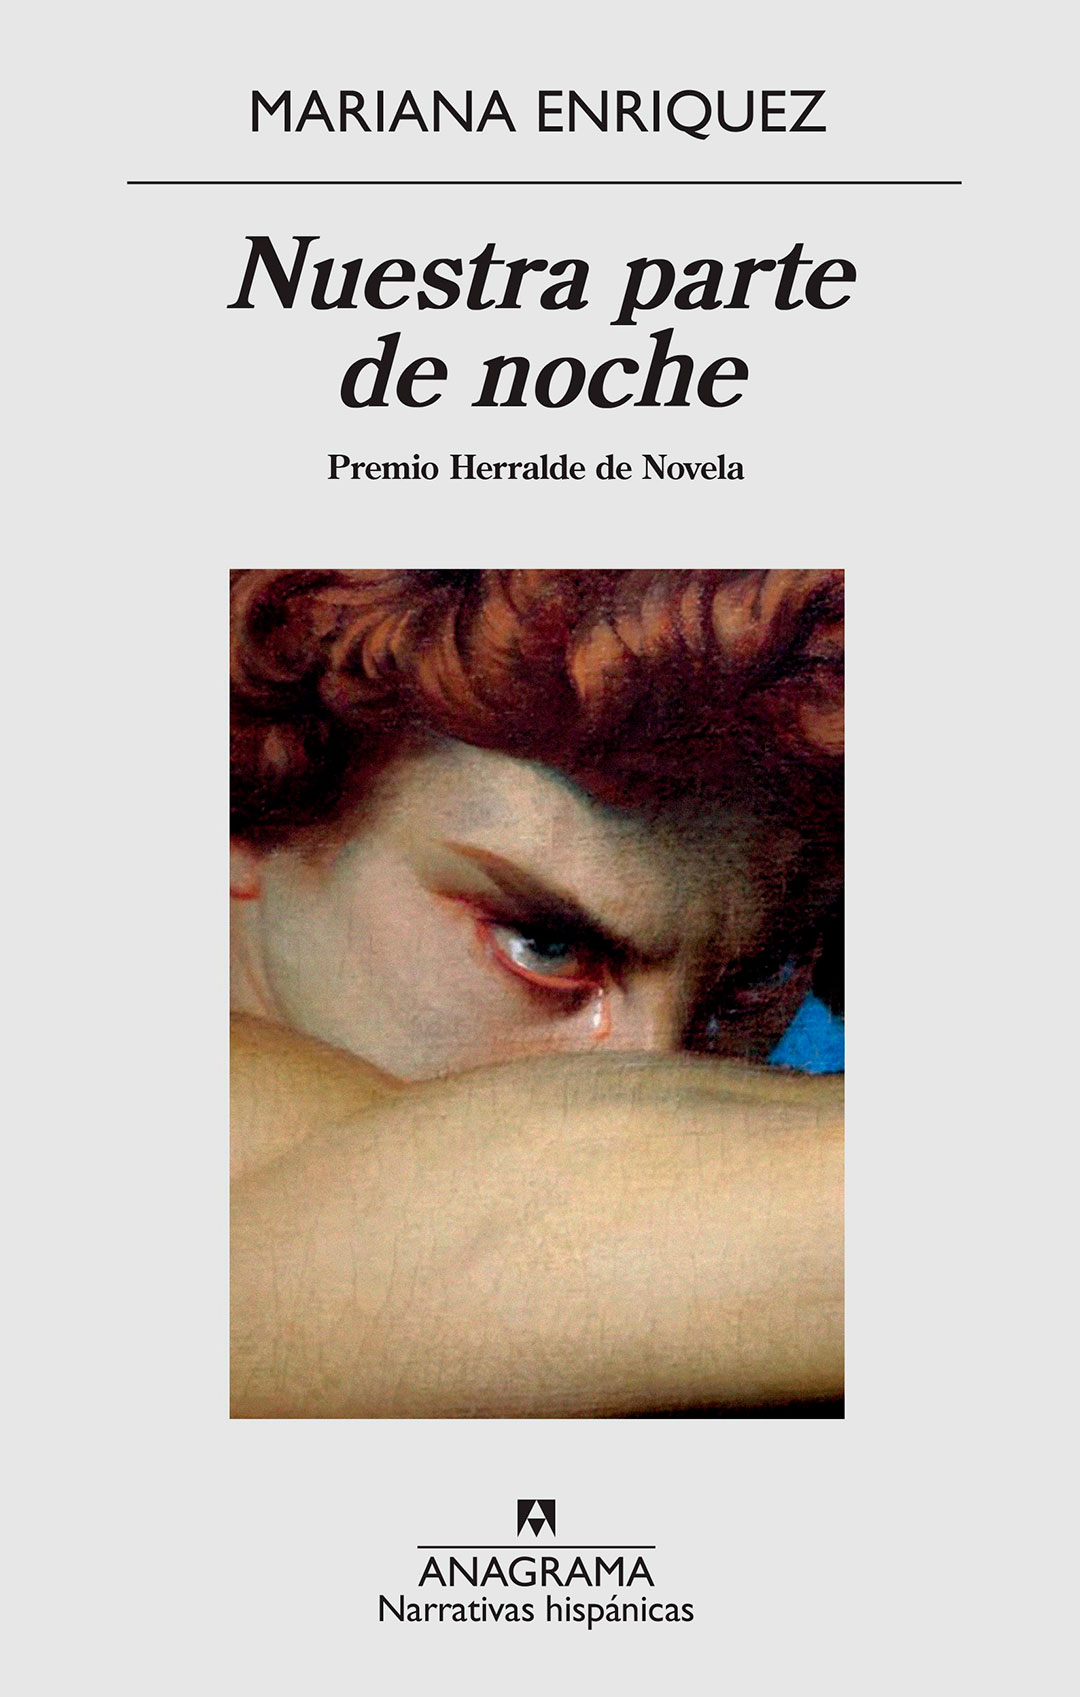 "Nuestra parte de noche". La celebrada novela de Mariana Enríquez